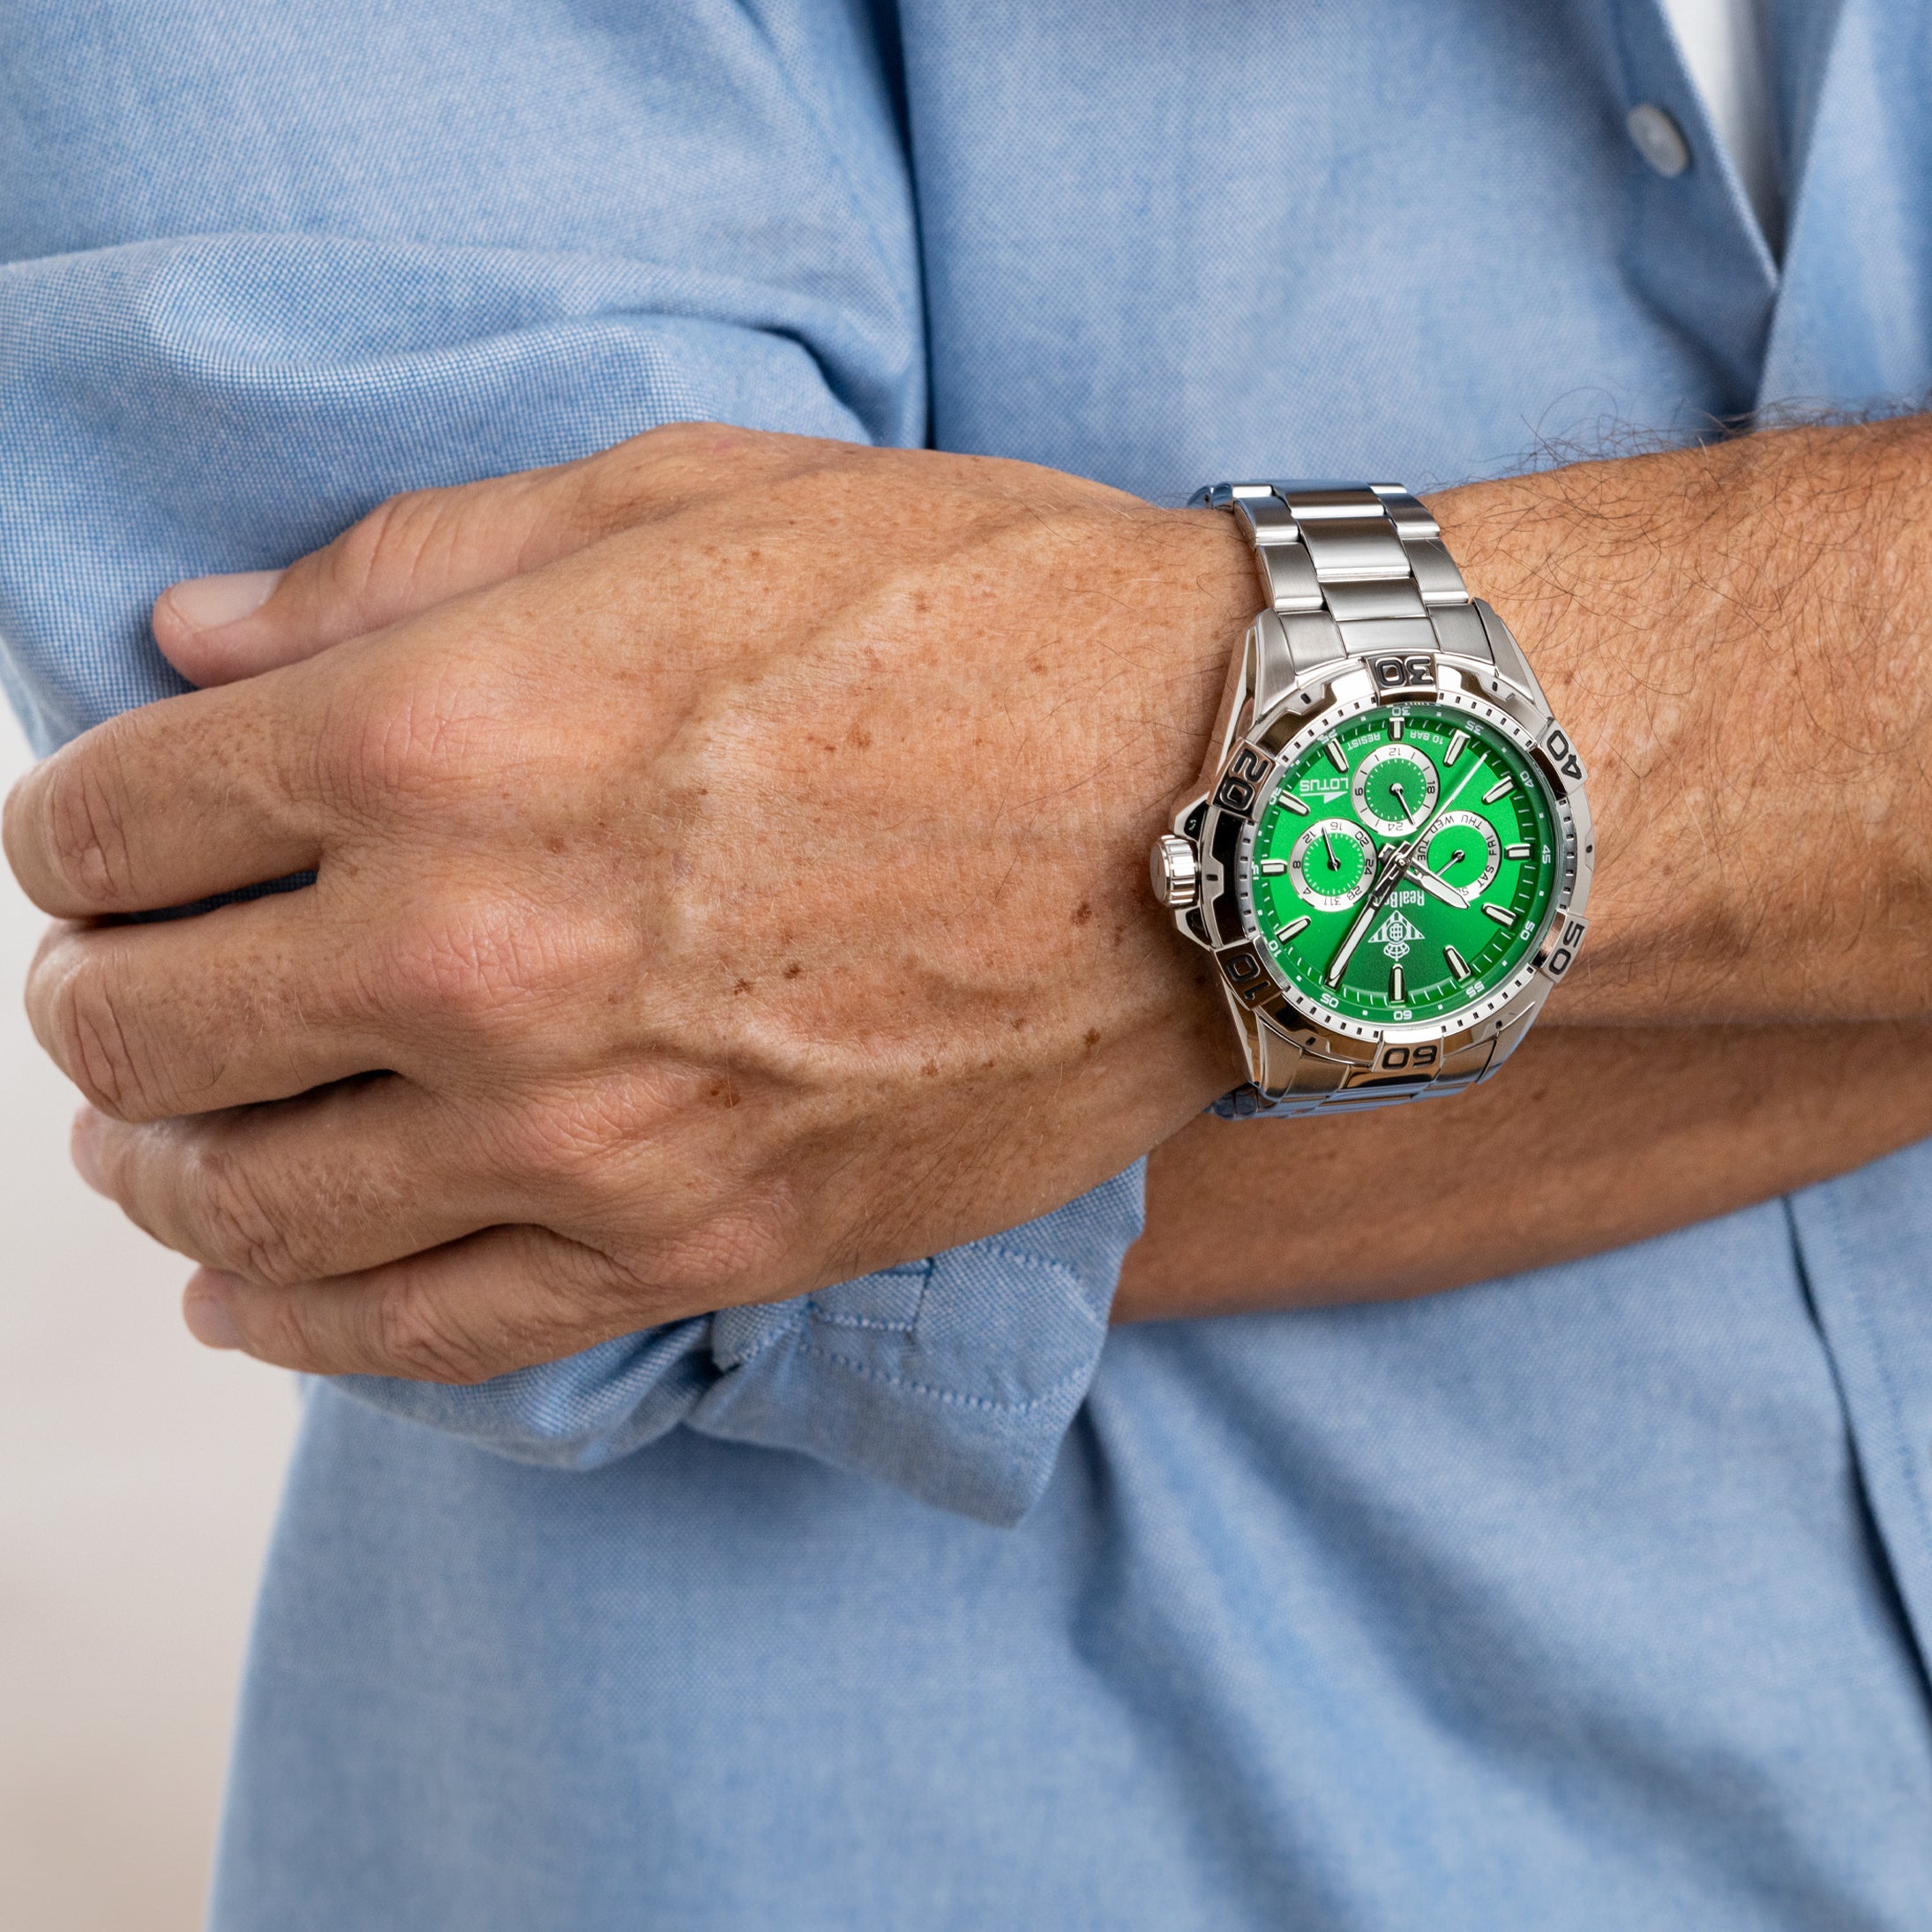 Reloj LOTUS Hombre Verde